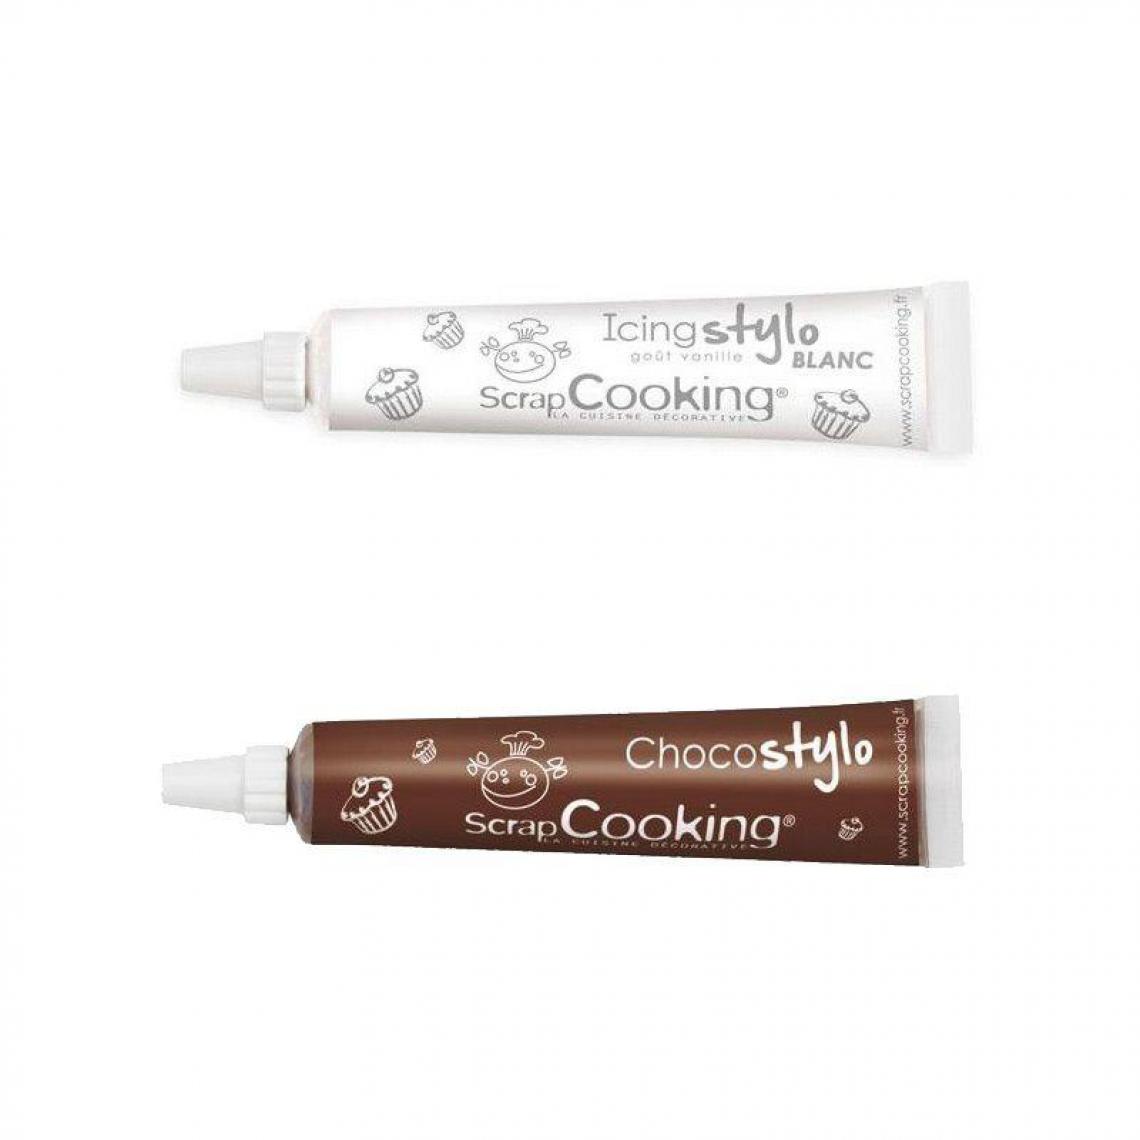 Scrapcooking - Stylo chocolat + Stylo glaçage blanc goût vanille - Kits créatifs